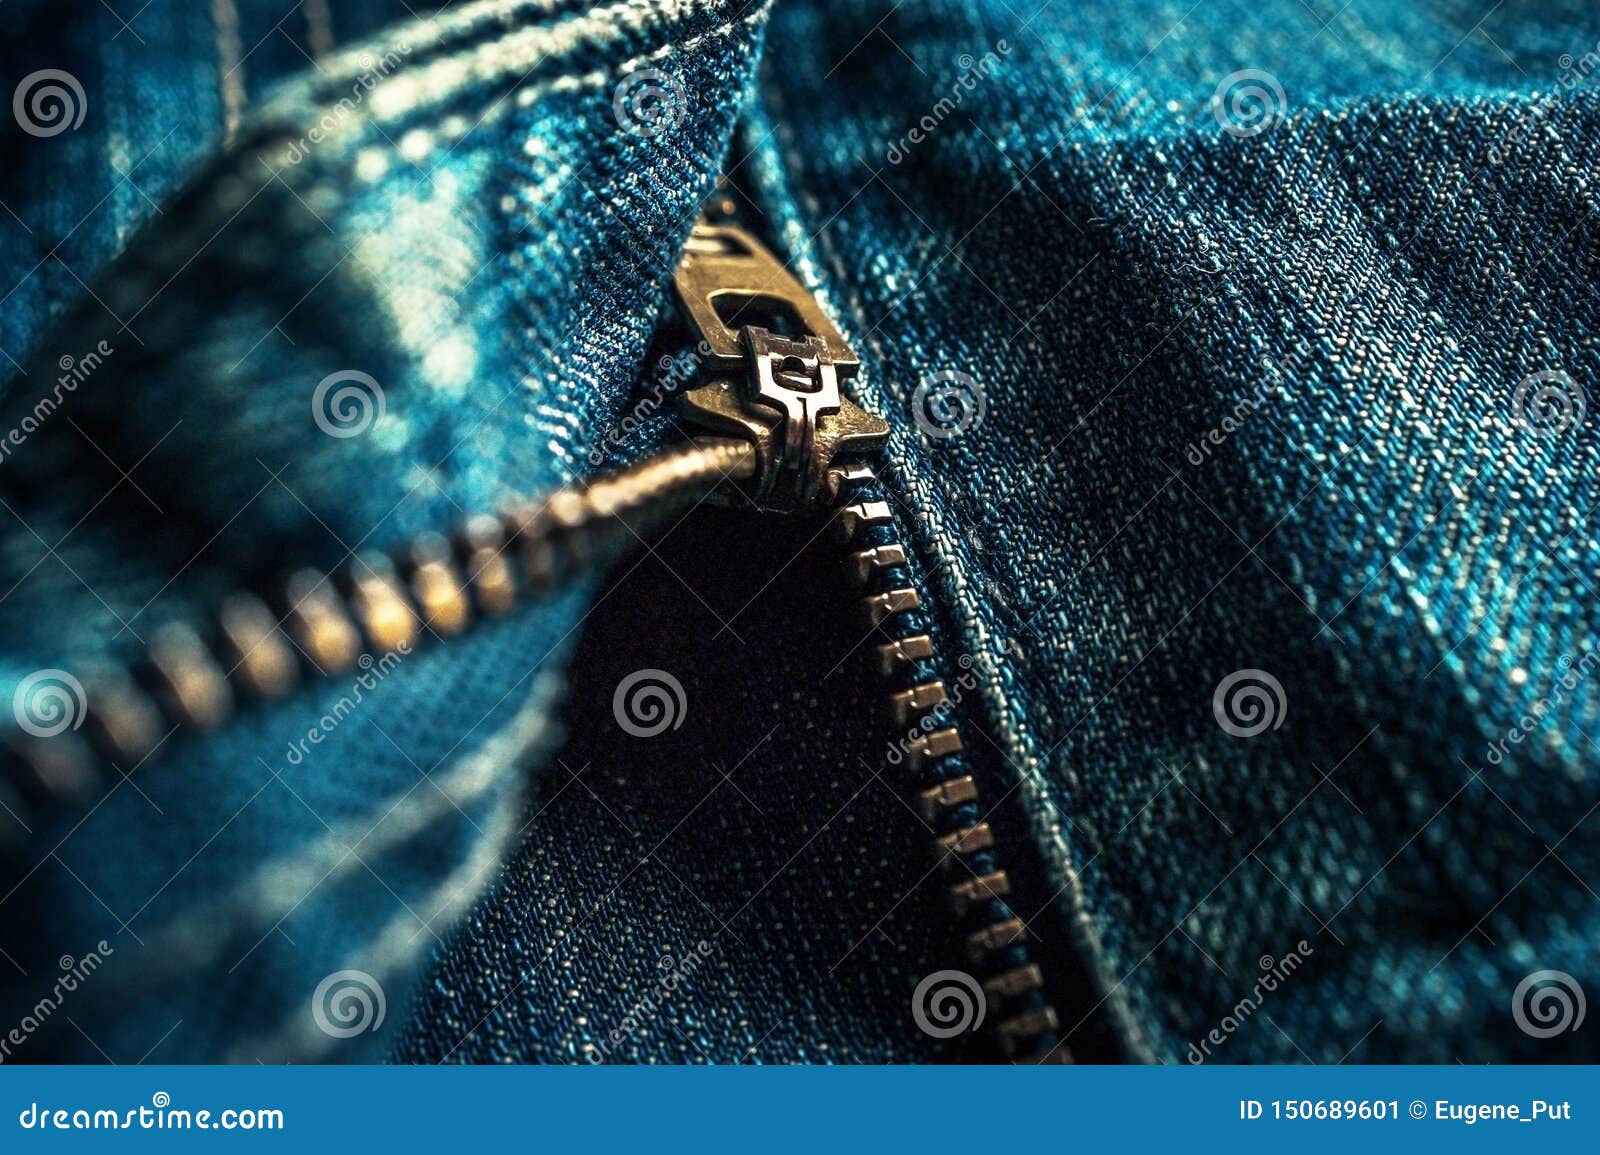 Denim Blue Jeans Metal Zipper Details. Copy Space Stock Image - Image ...